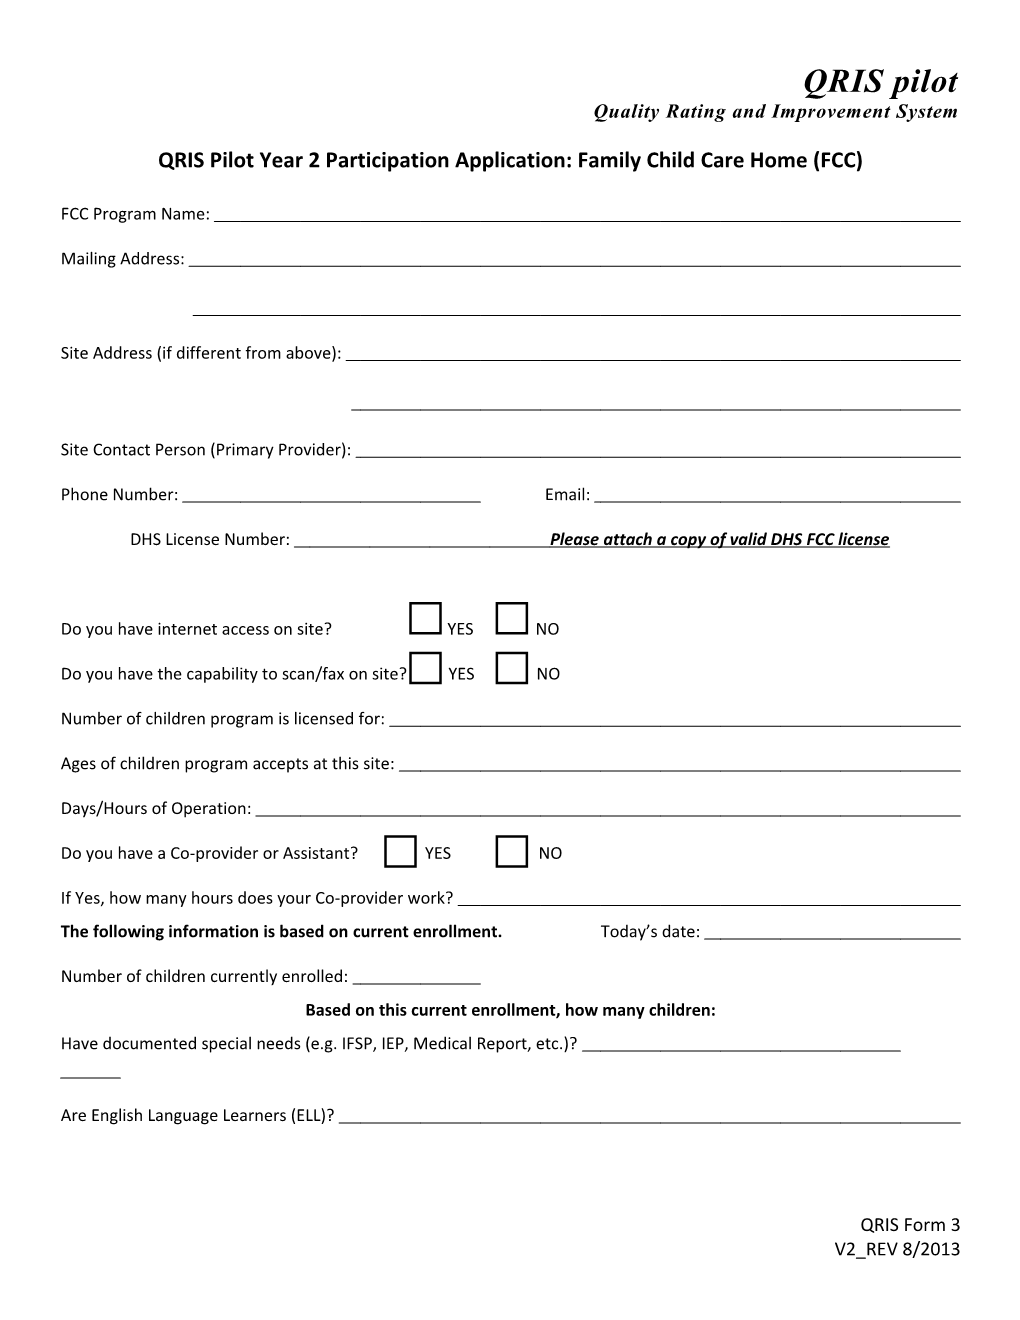 QRIS Pilot Year 2 Participation Application: Family Child Care Home (FCC)